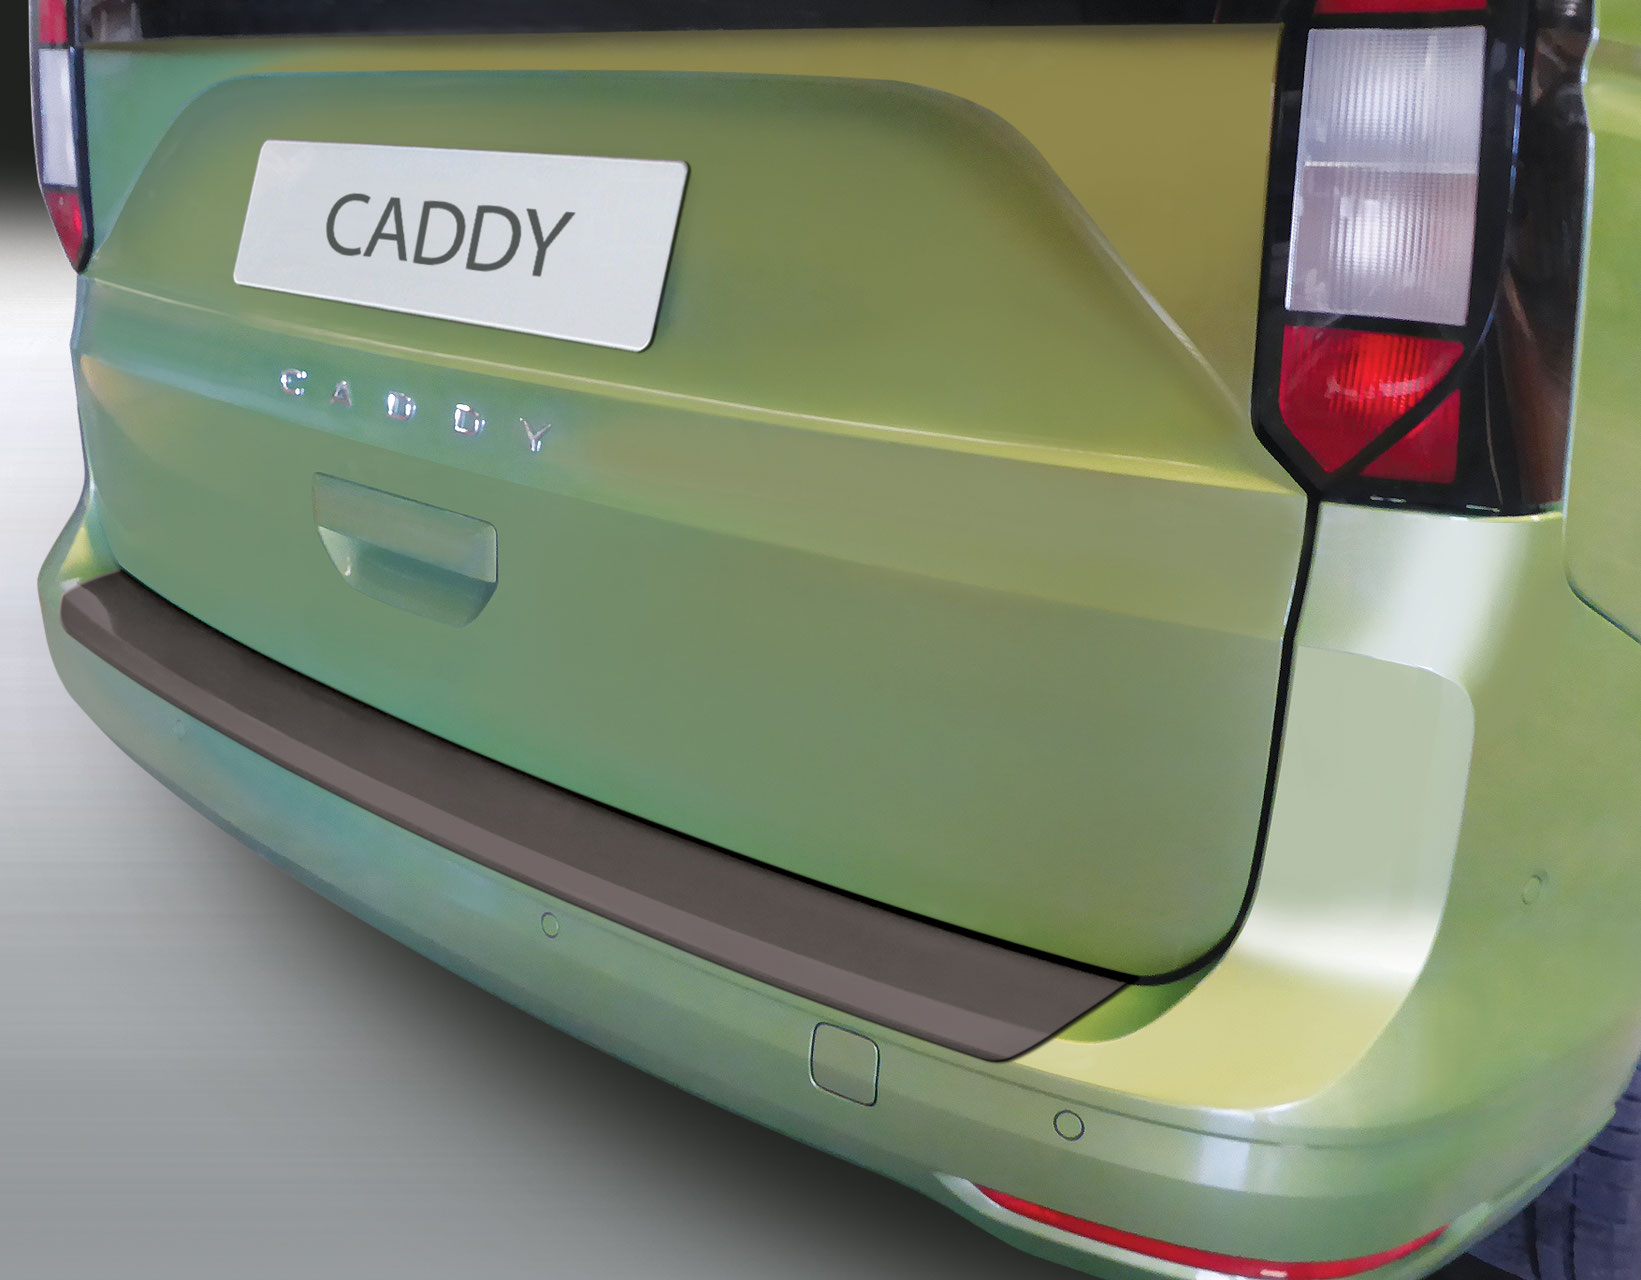 Ladekantenschutz für VW CADDY - Schutz für die Ladekante Ihres Fahrzeuges